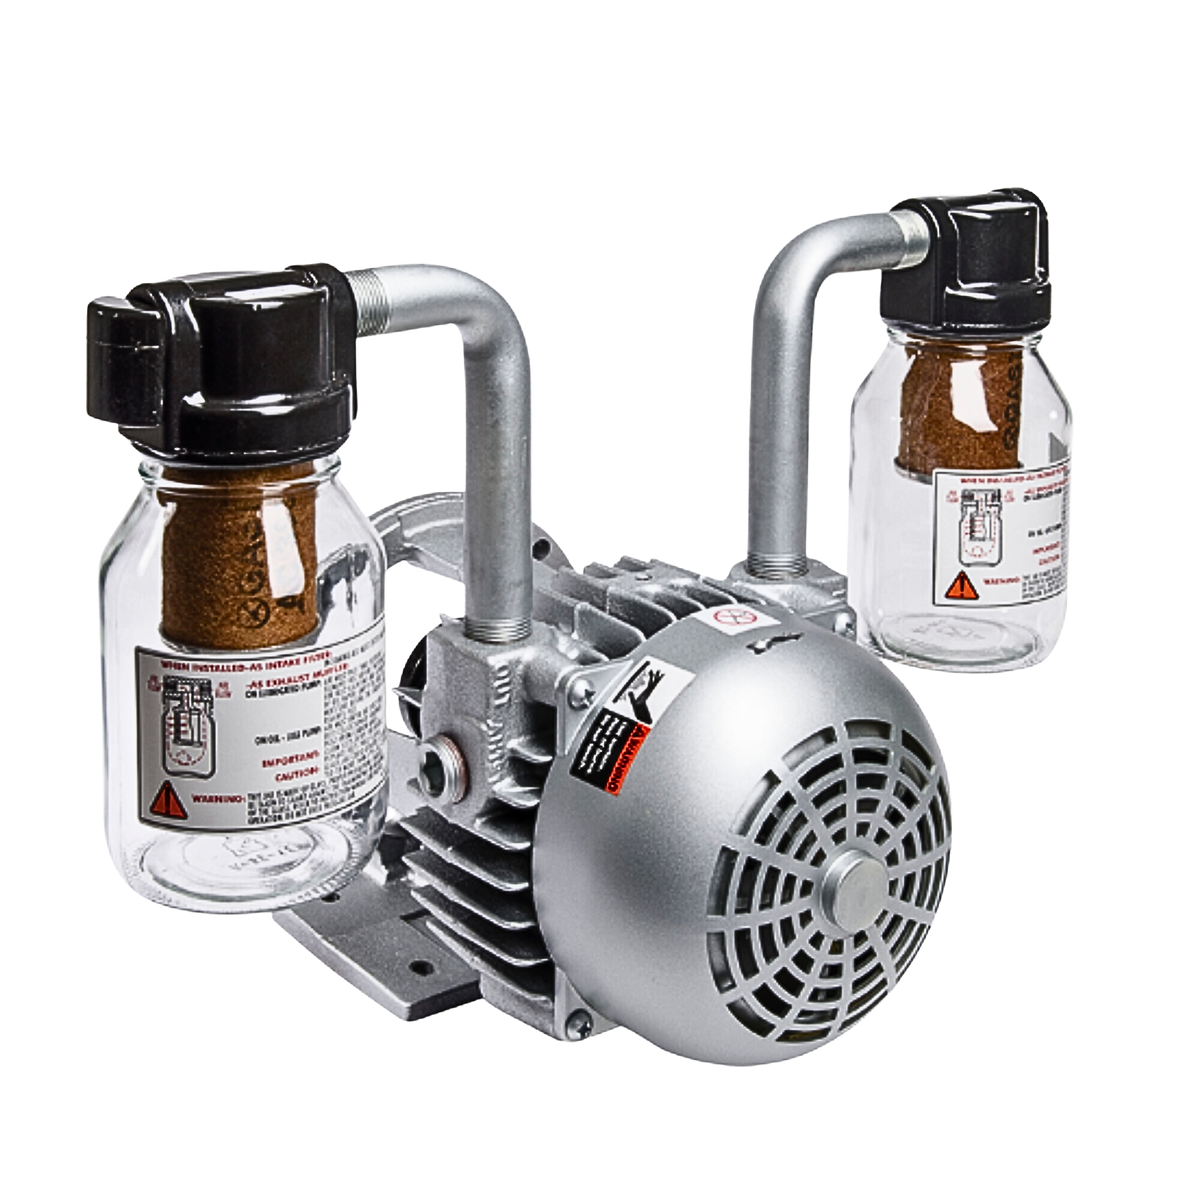 Gast | 1.5HP-4 Vane-Vacuum pump | 2567-V103 used on gast product line